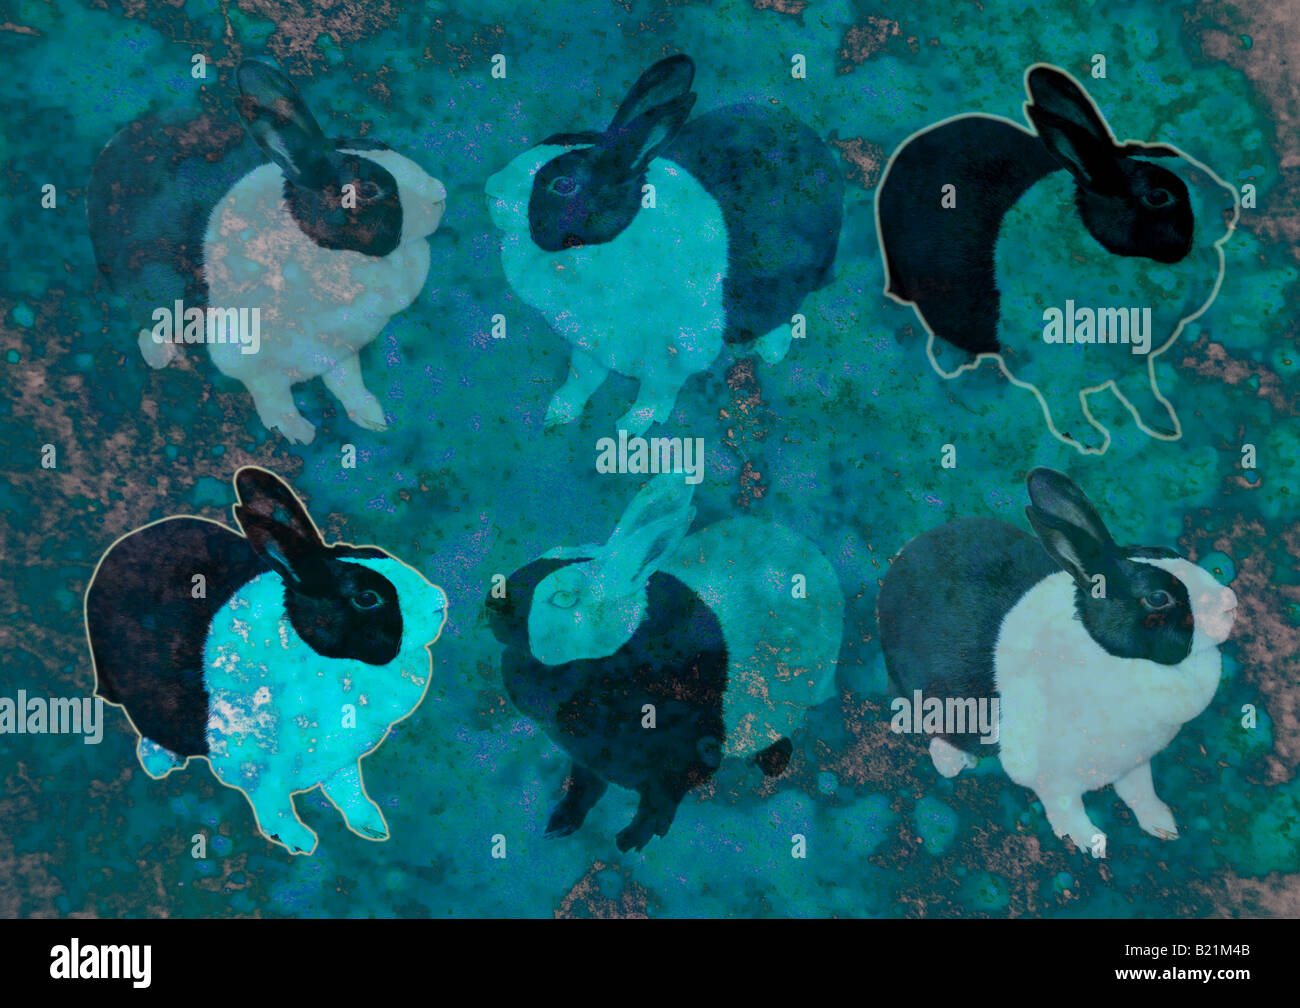 Ilustración de conejos Foto de stock